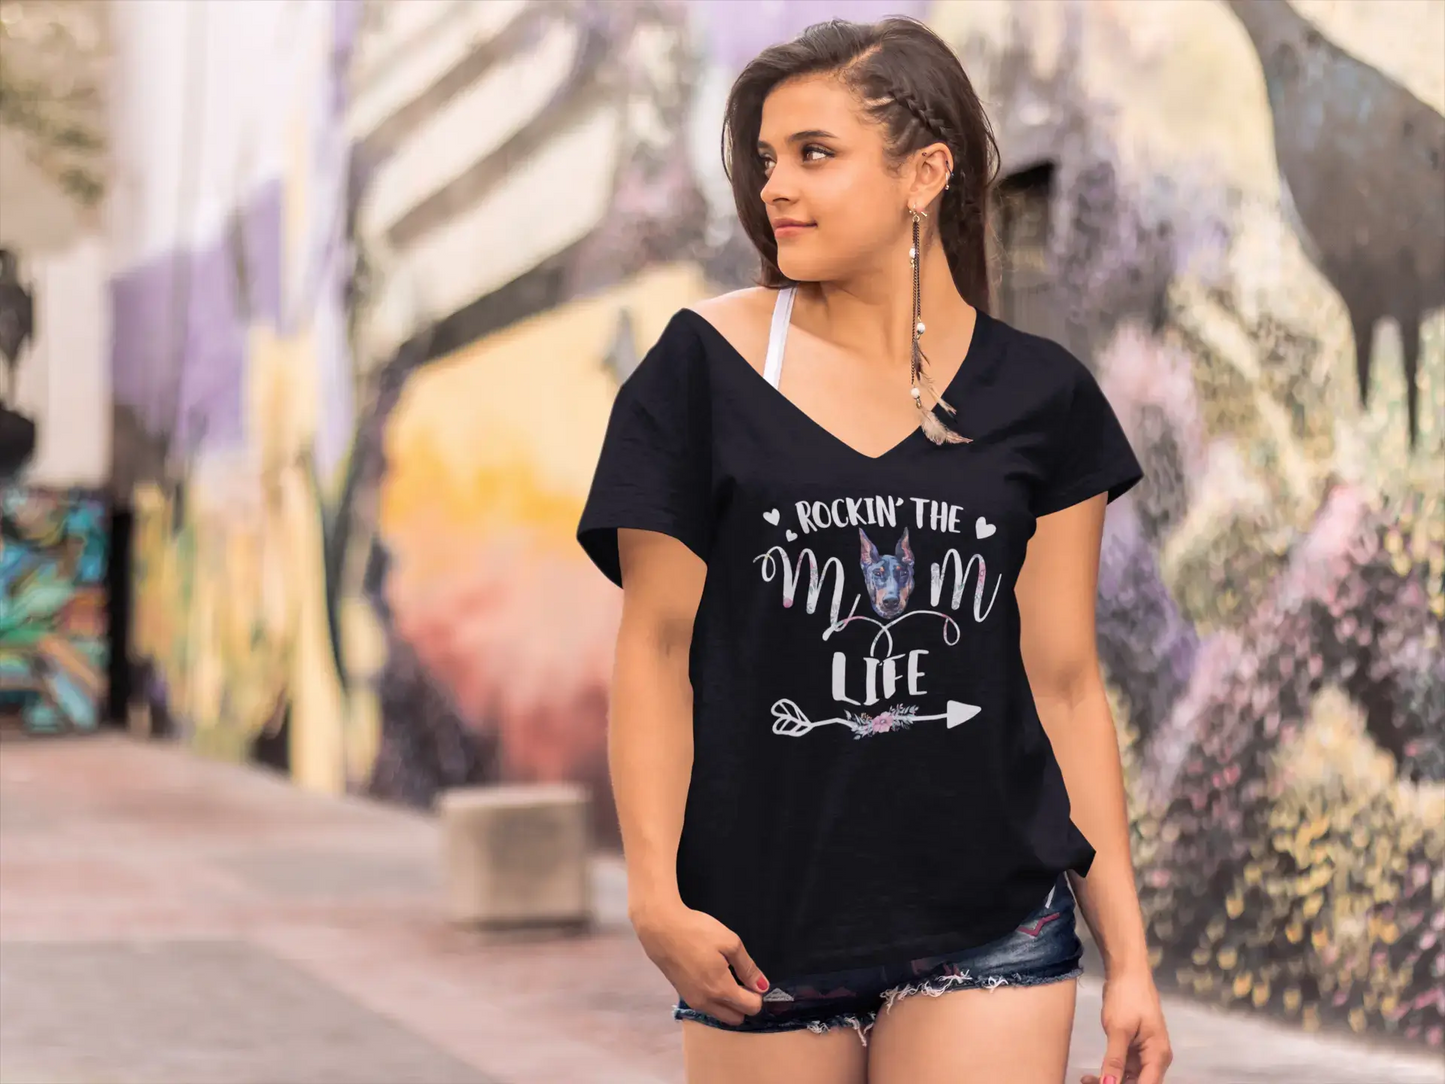 ULTRABASIC Women's T-Shirt Rockin' the Doberman Mom Life - Dog Lover Tee Shirt